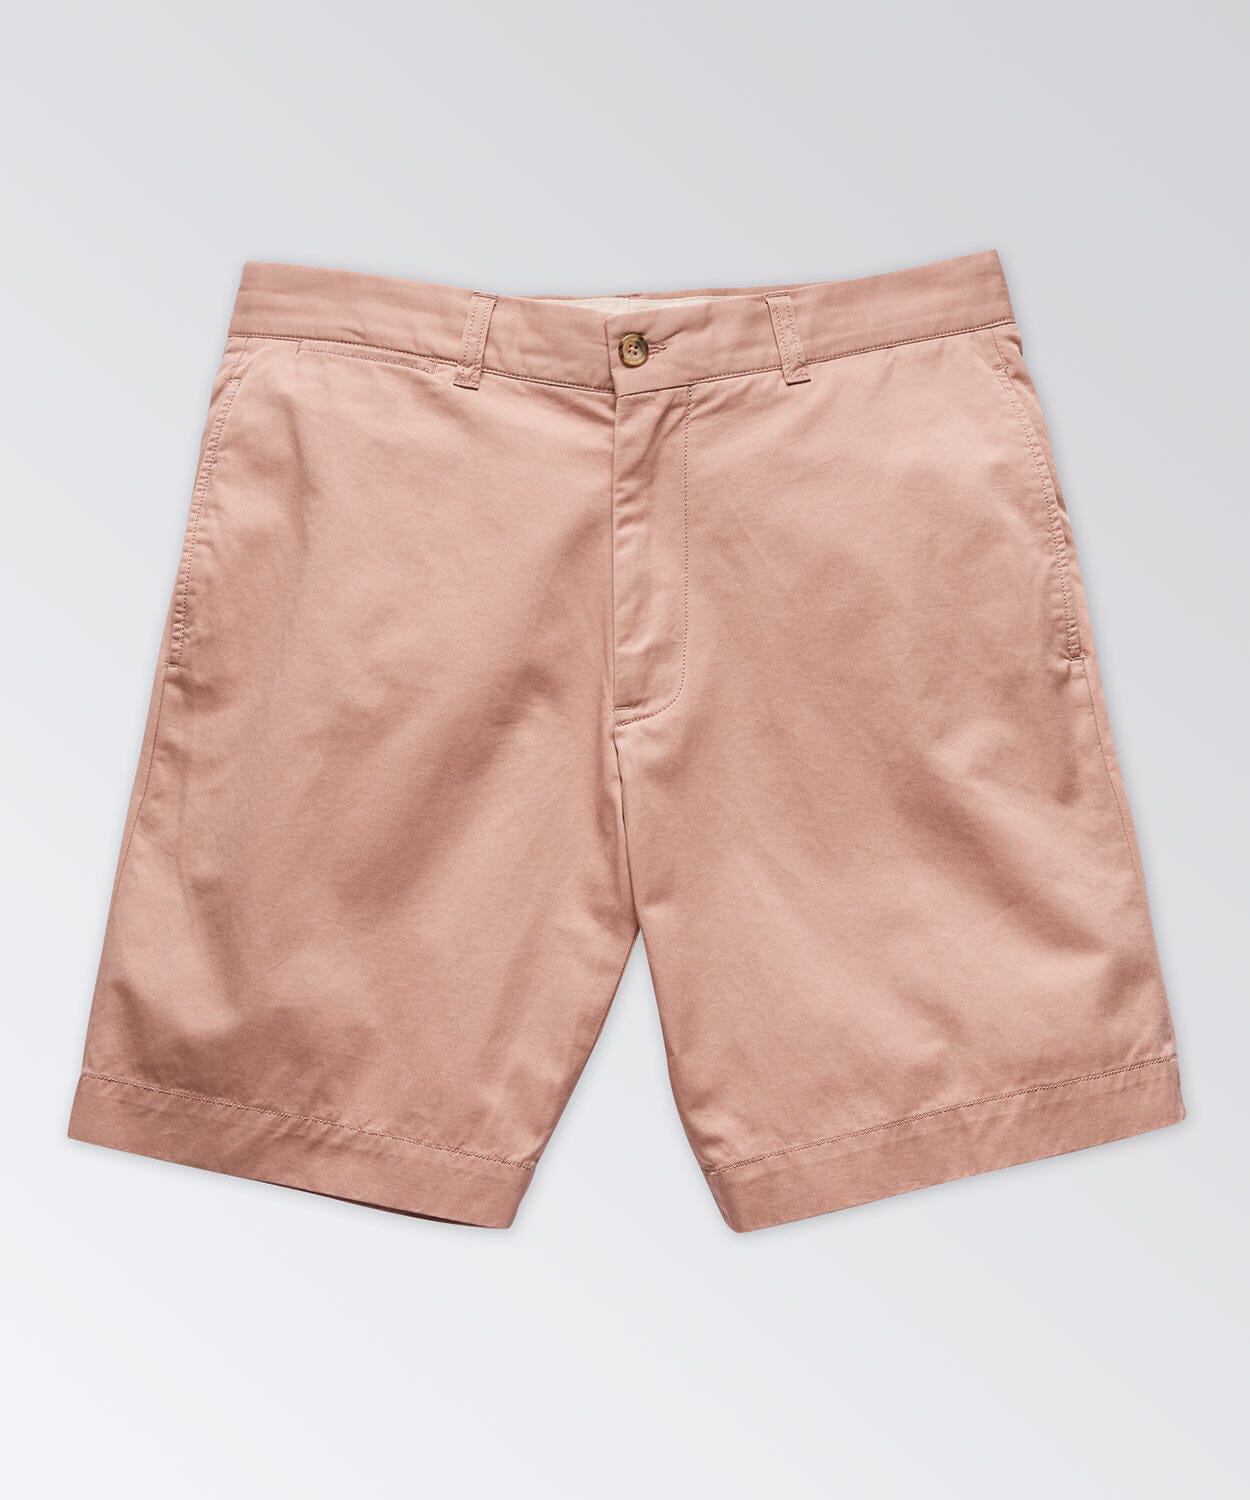 Anvil Chino Short Shorts OOBE BRAND Pink Pearl 32" 